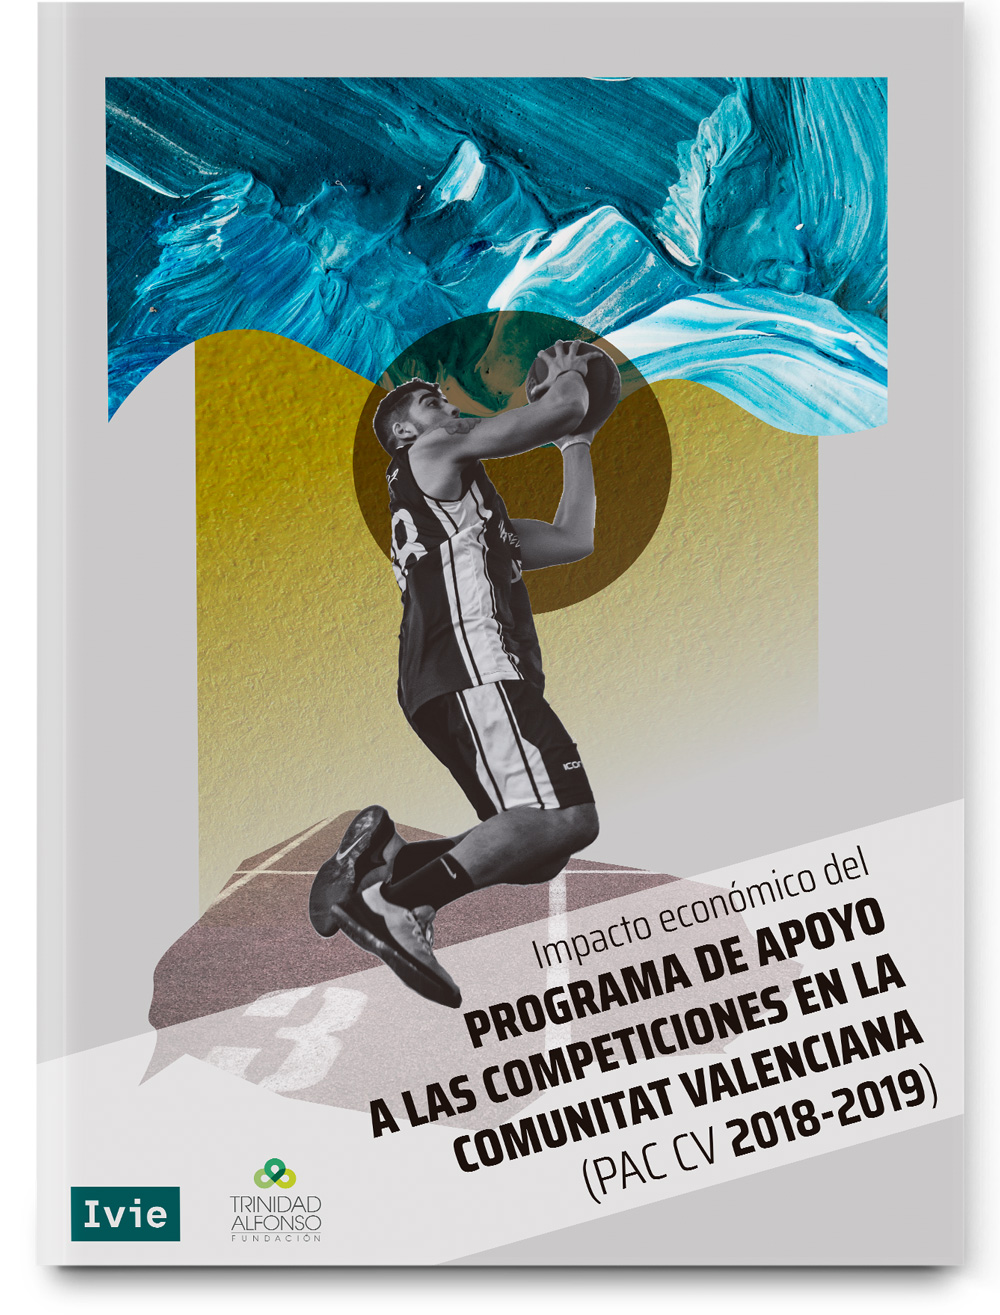 Impacto económico del Programa de Apoyo a competiciones deportivas de la Comunitat Valenciana de la Fundación Trinidad Alfonso. Tercera edición